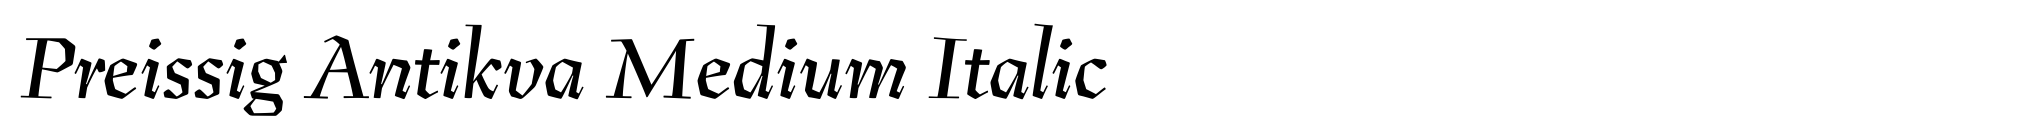 Preissig Antikva Medium Italic image